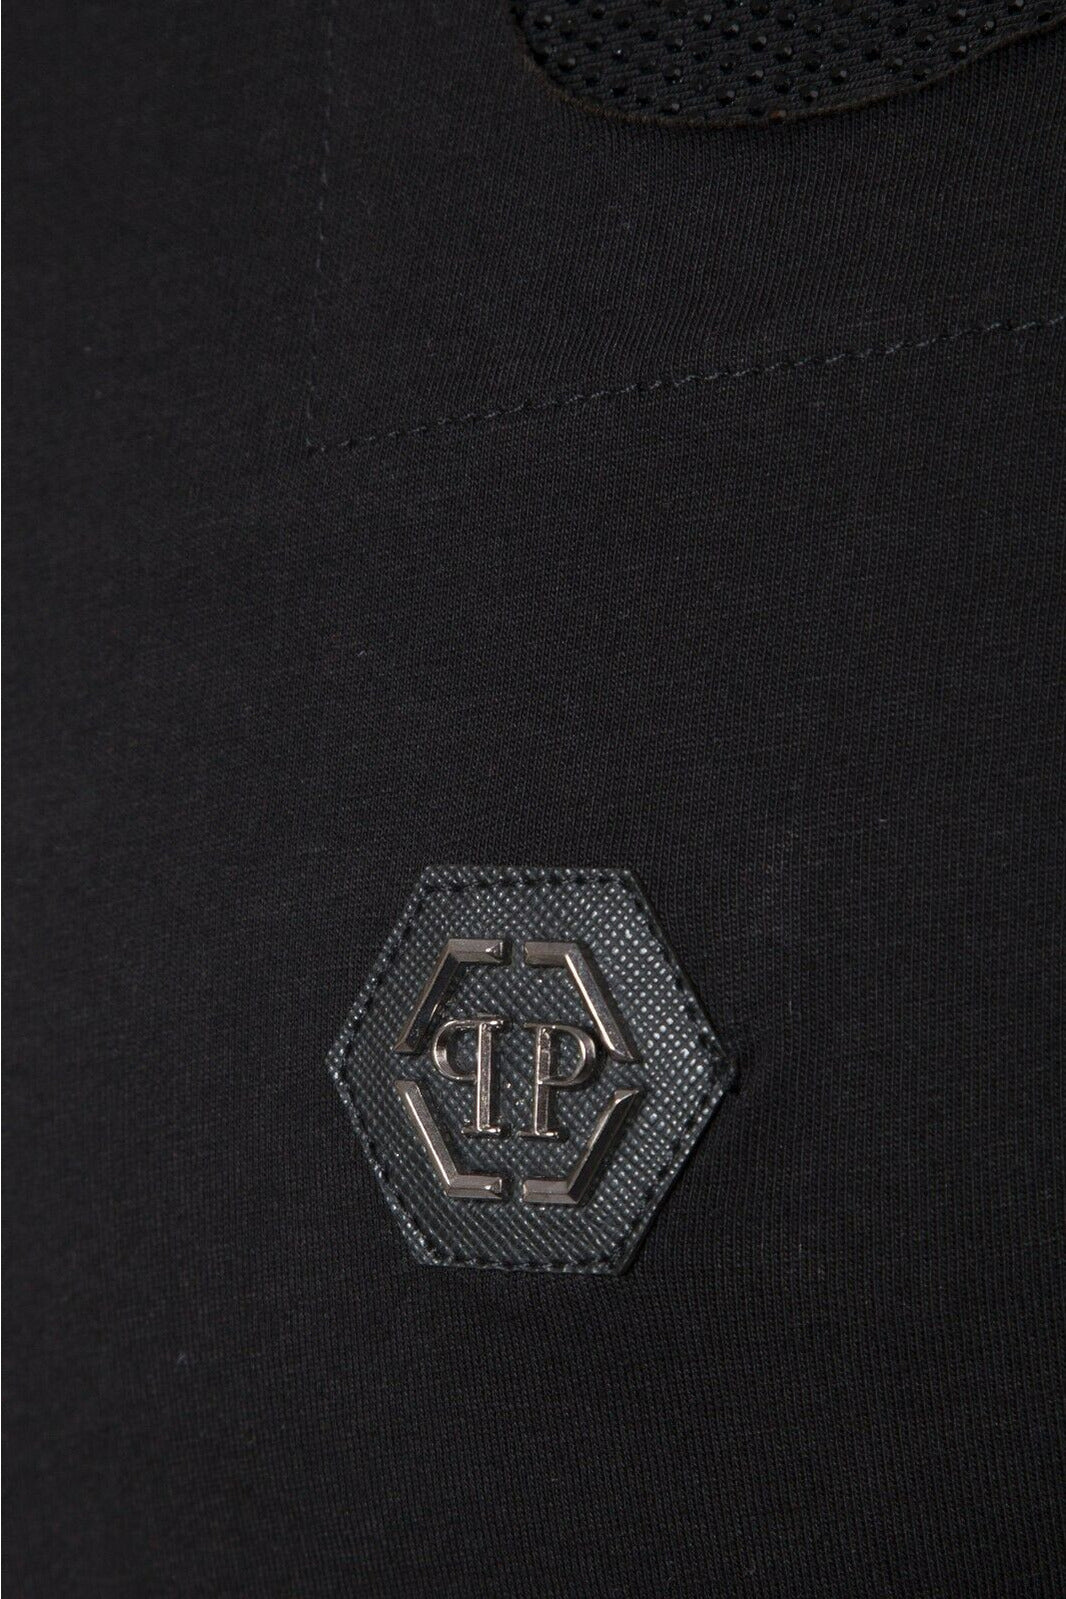 Philipp Plein  Men T-Shirt Color Black Material Cotton